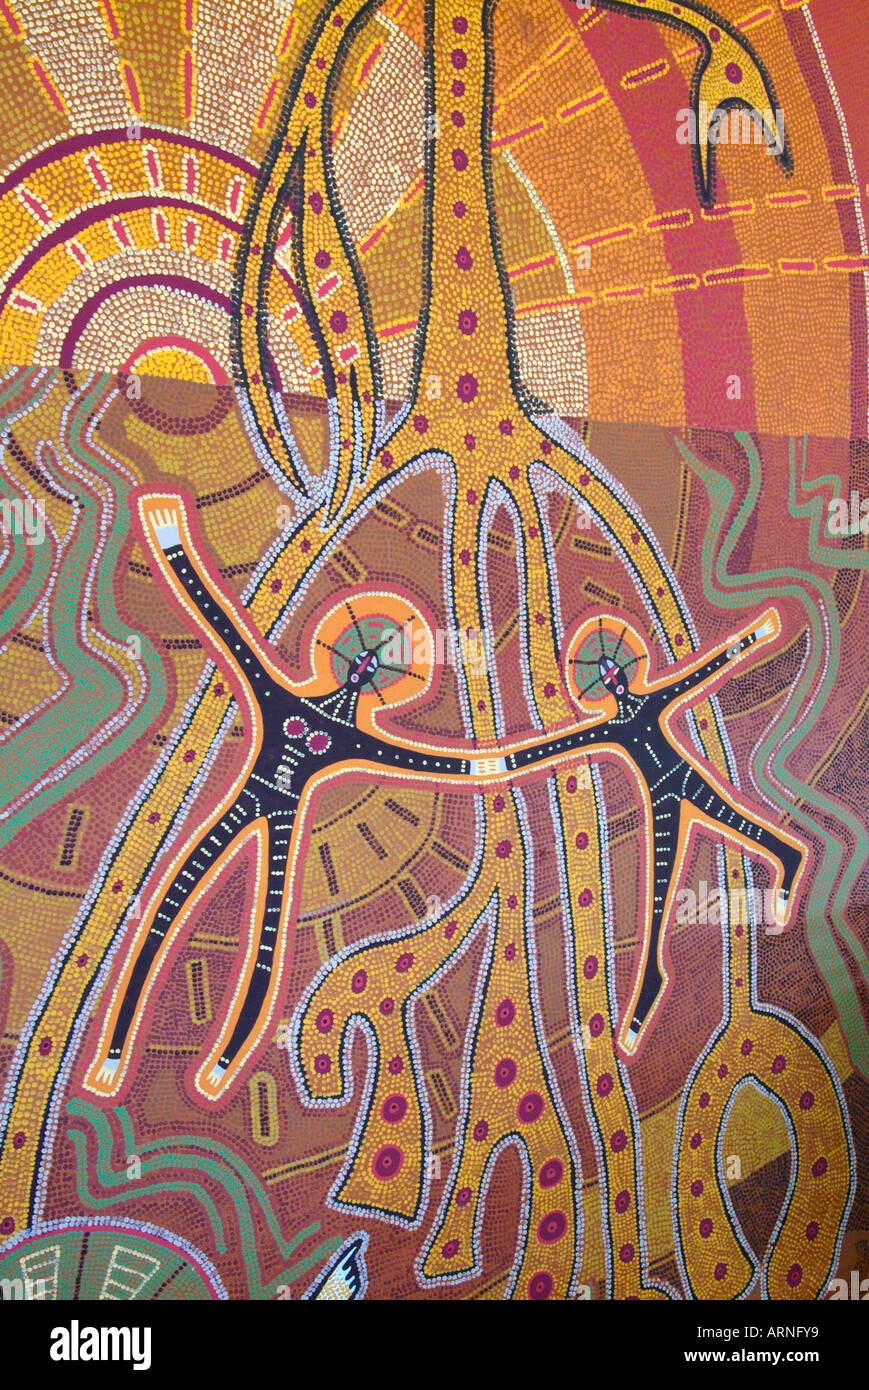 L'art aborigène Australie rêve temps terre dot peinture exposition de l'héritage de la culture de l'Australasie Europe brown earth circle Banque D'Images